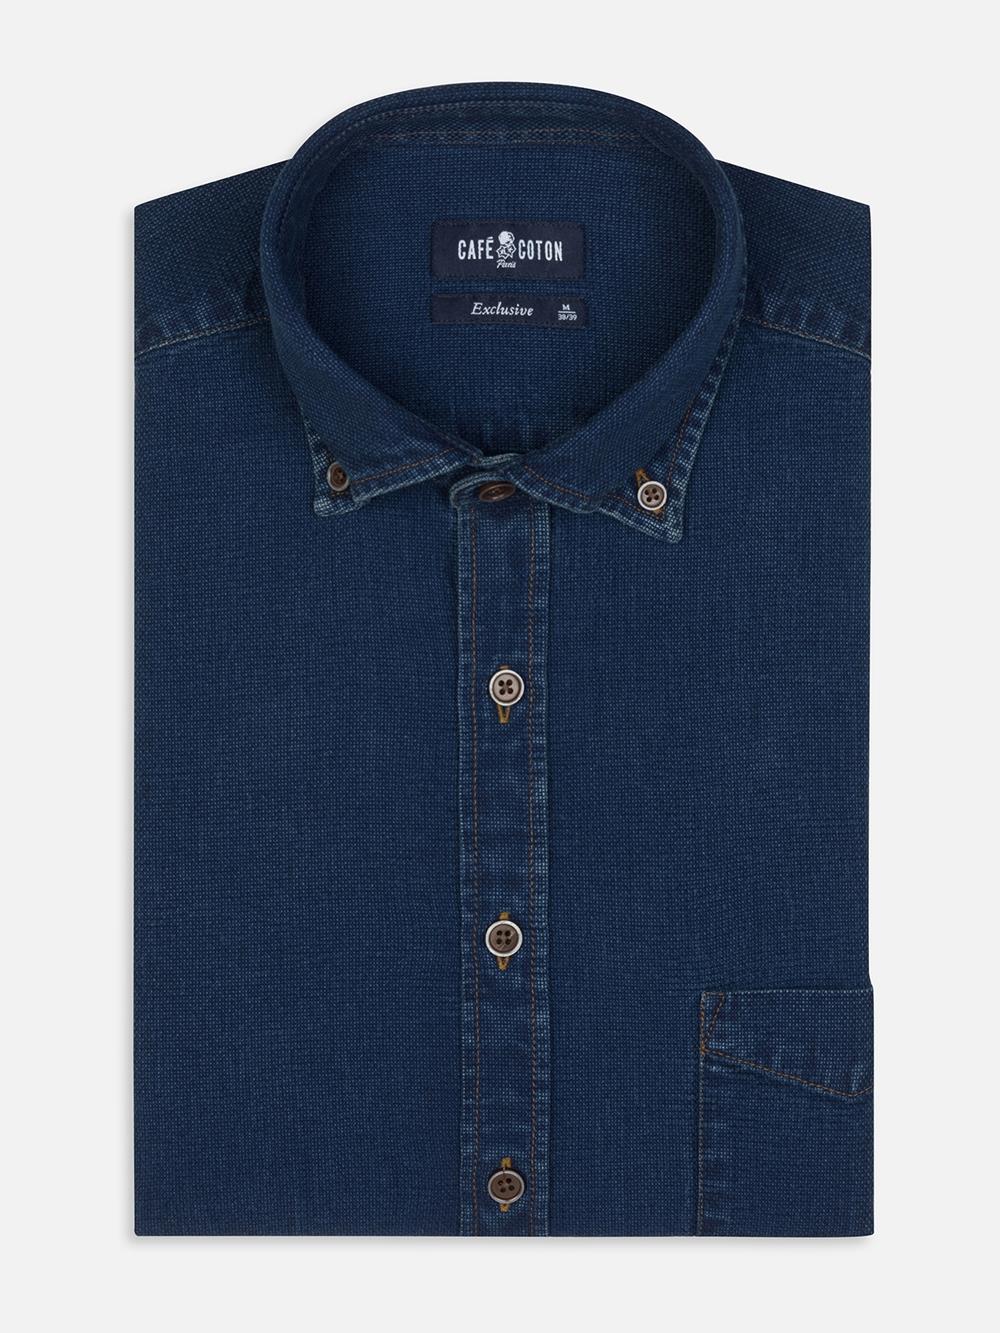 Hemd Kurt aus Indigo-Oxford  - Buttondown Kragen